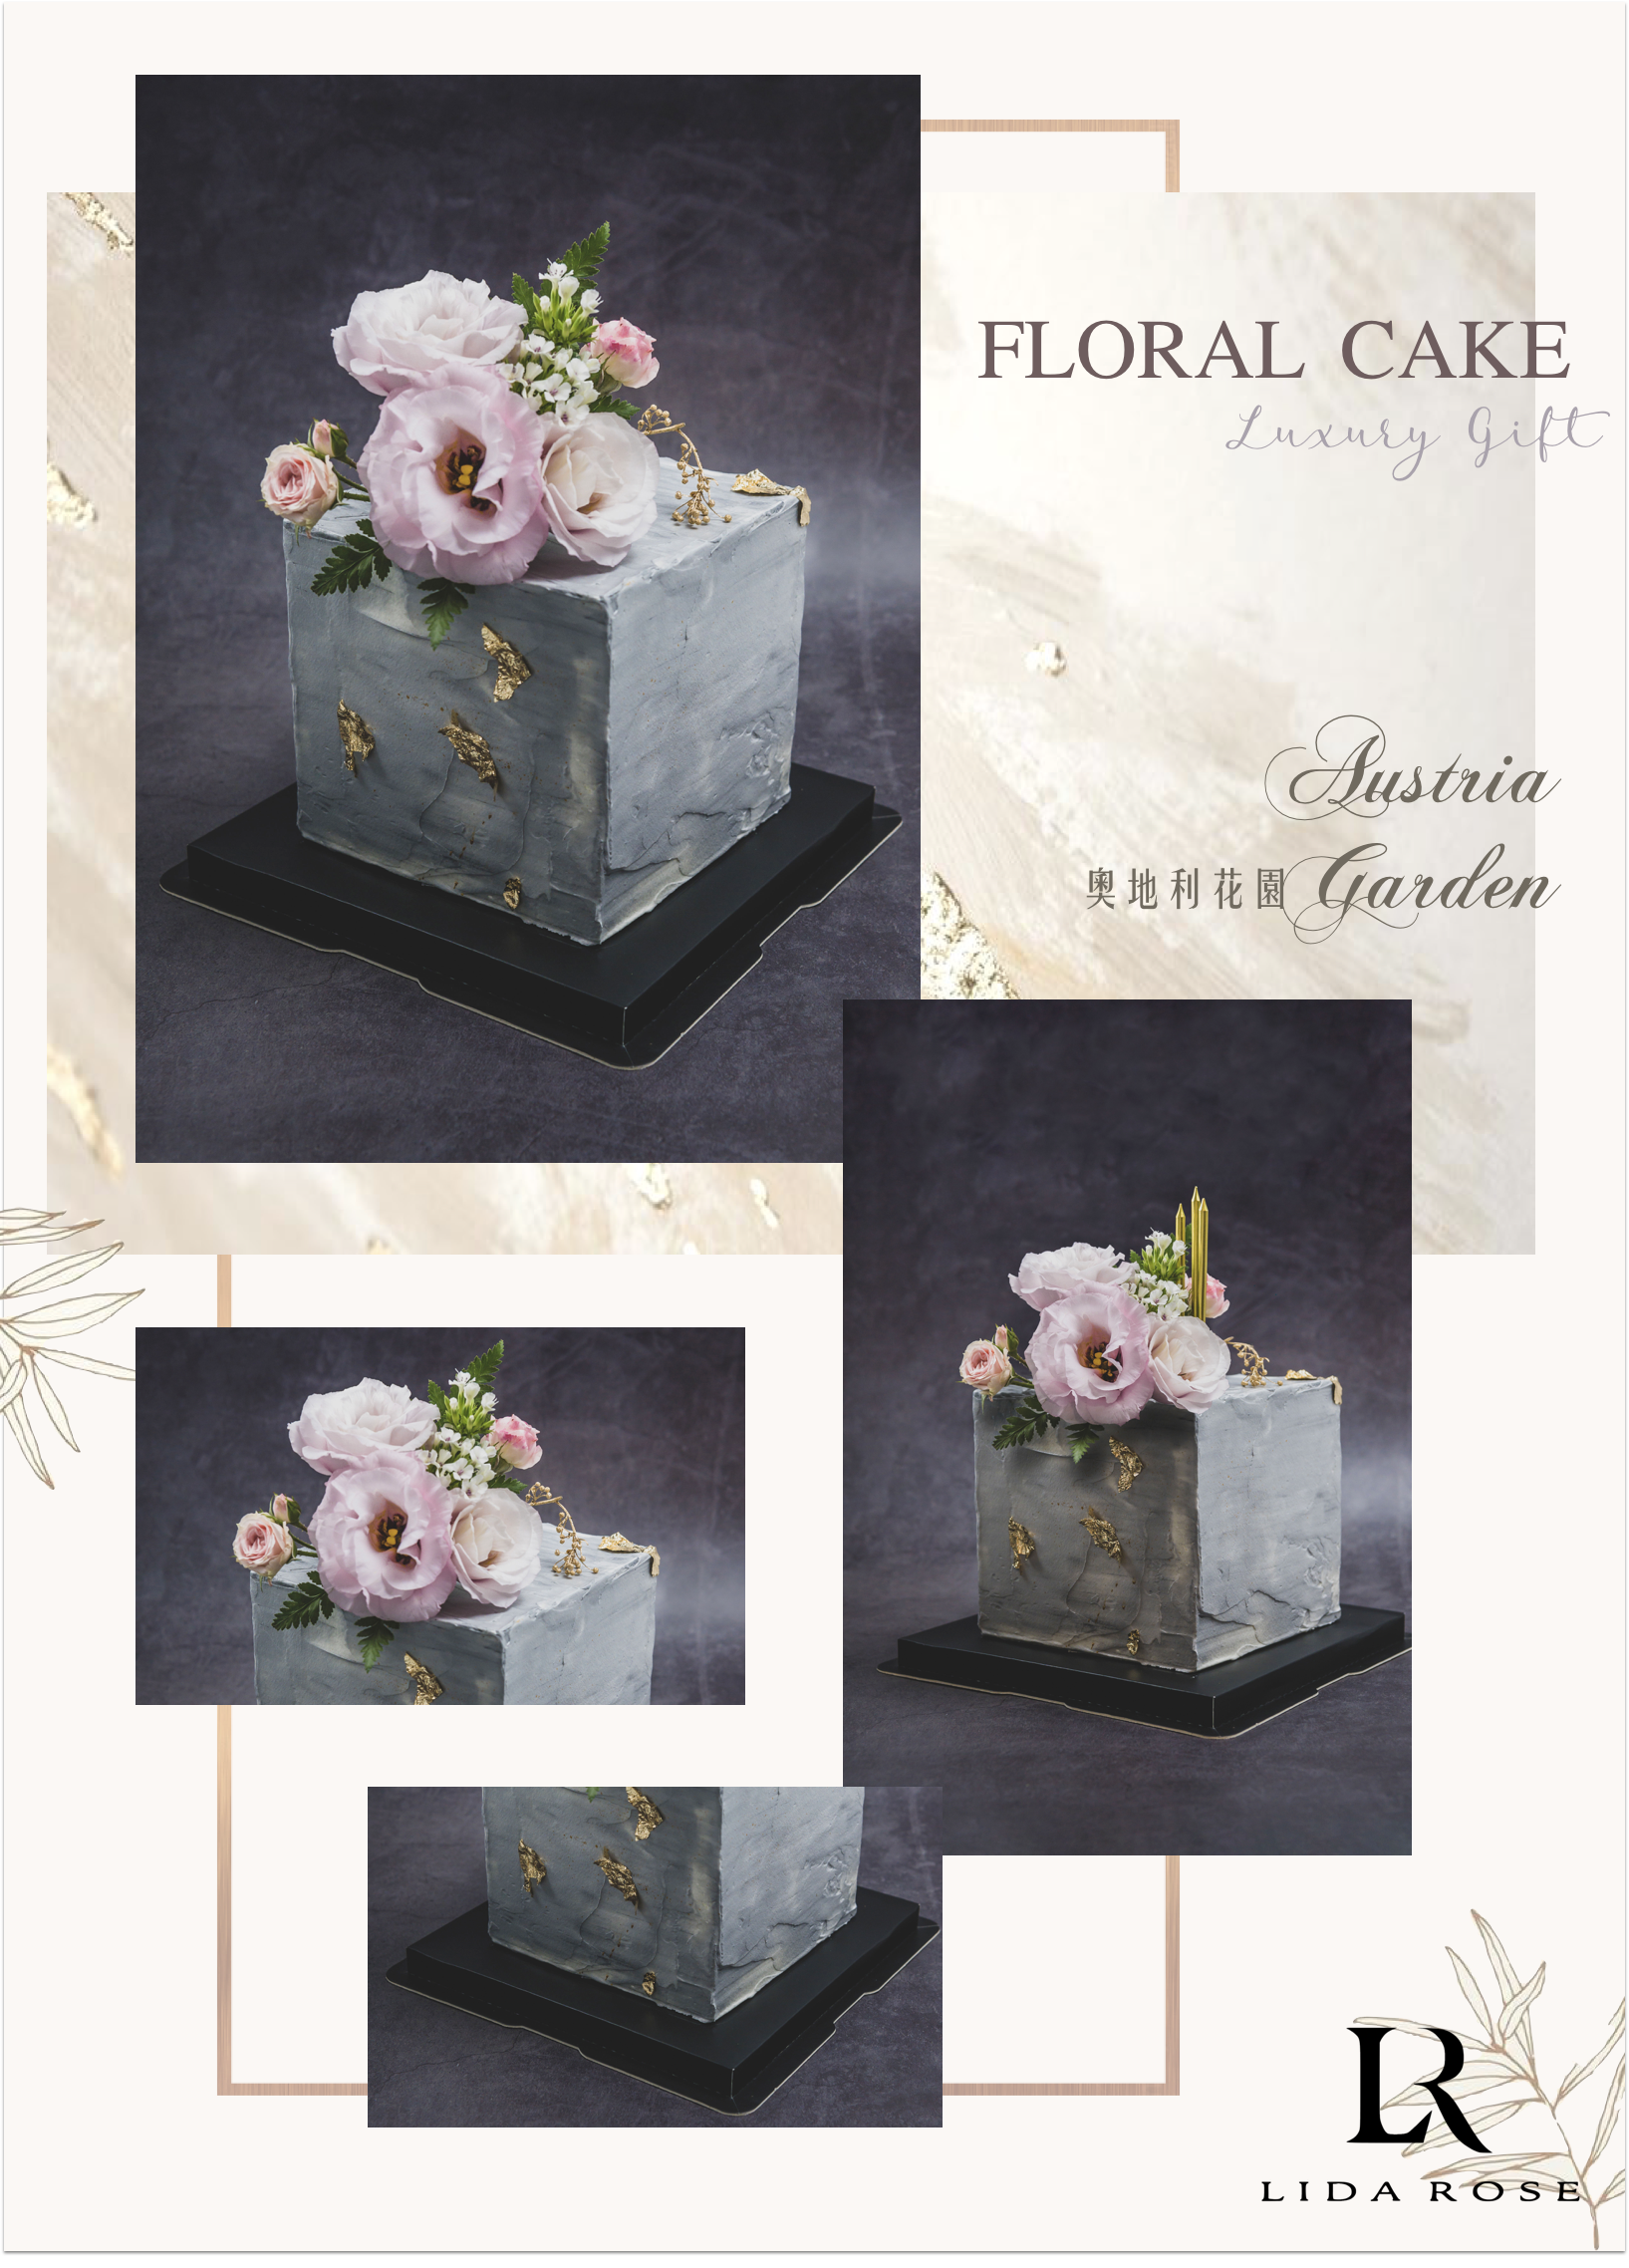 【僅限寄送台中地區 】LIDA ROSE 6吋加高花藝設計蛋糕 奧地利花園 Austria Garden